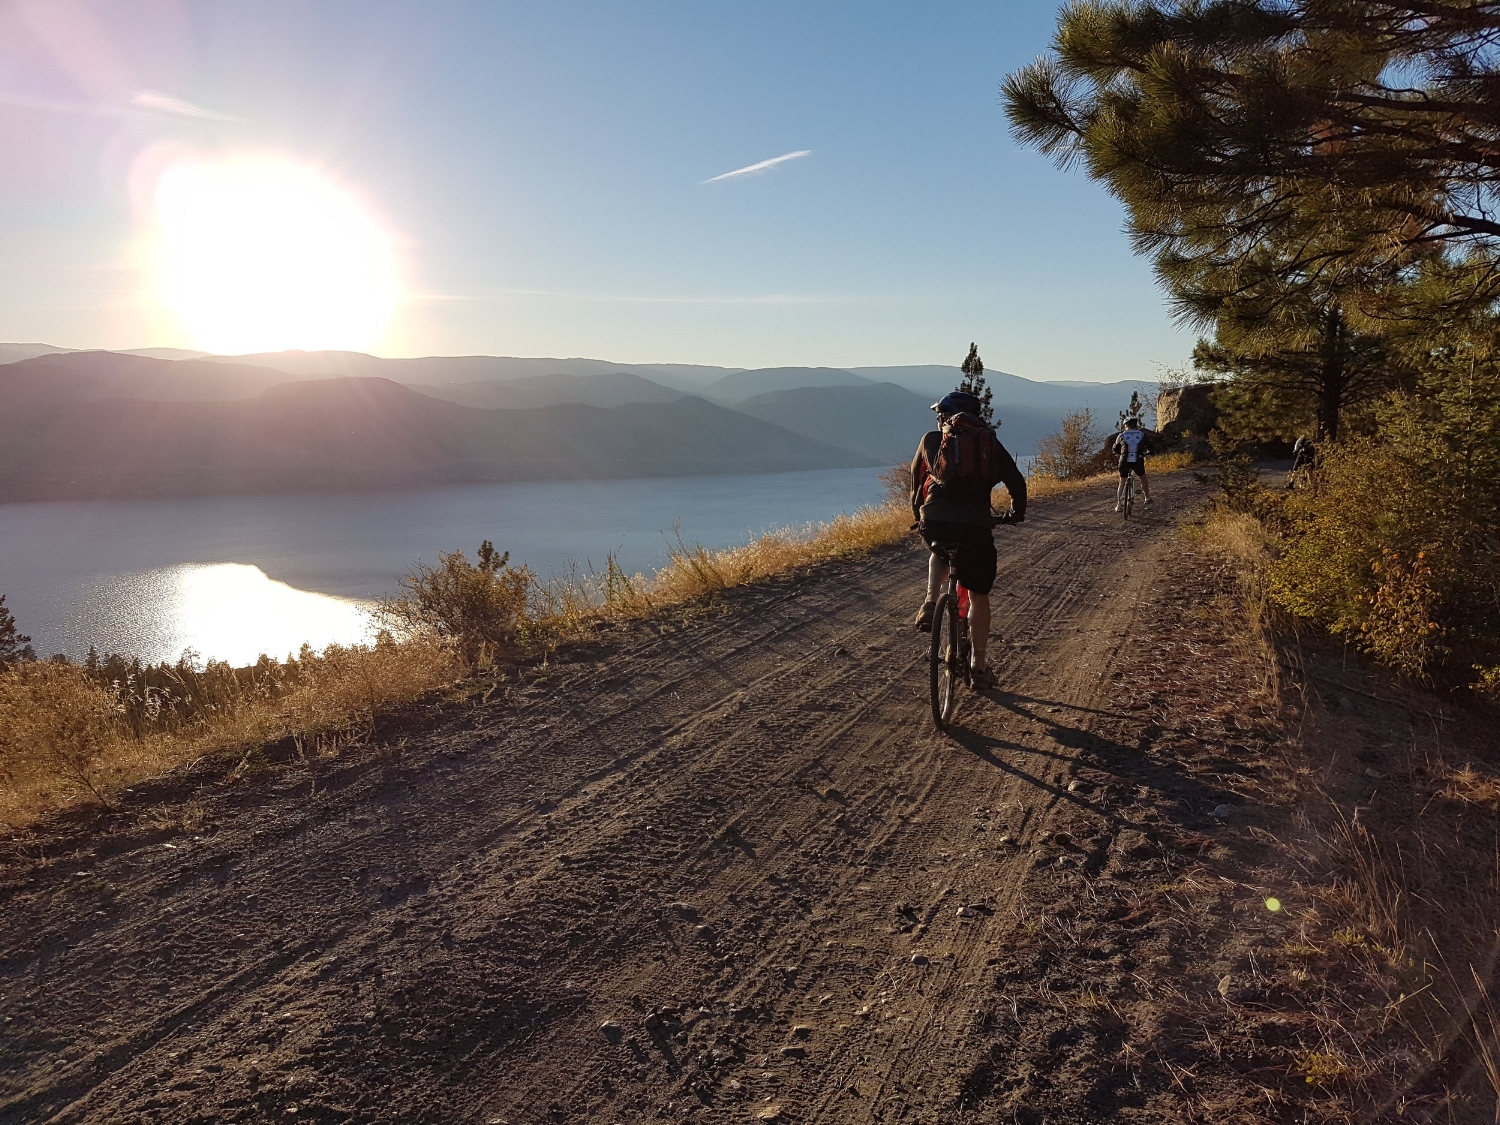 Bike touring along the Okanagan lake on the KVR trail